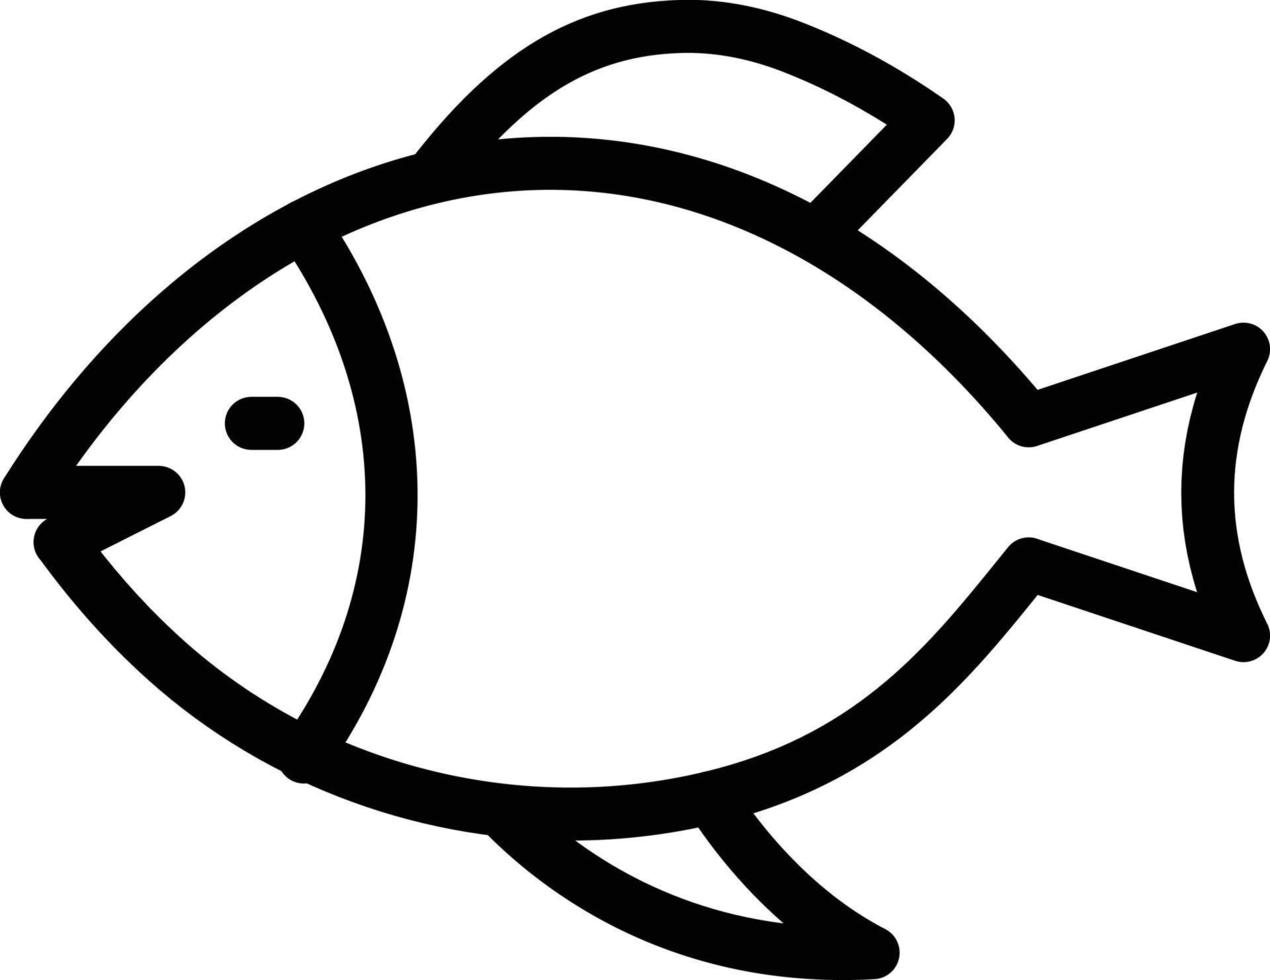 bas vissen vector illustratie op een background.premium kwaliteit symbolen.vector iconen voor concept en grafisch ontwerp.